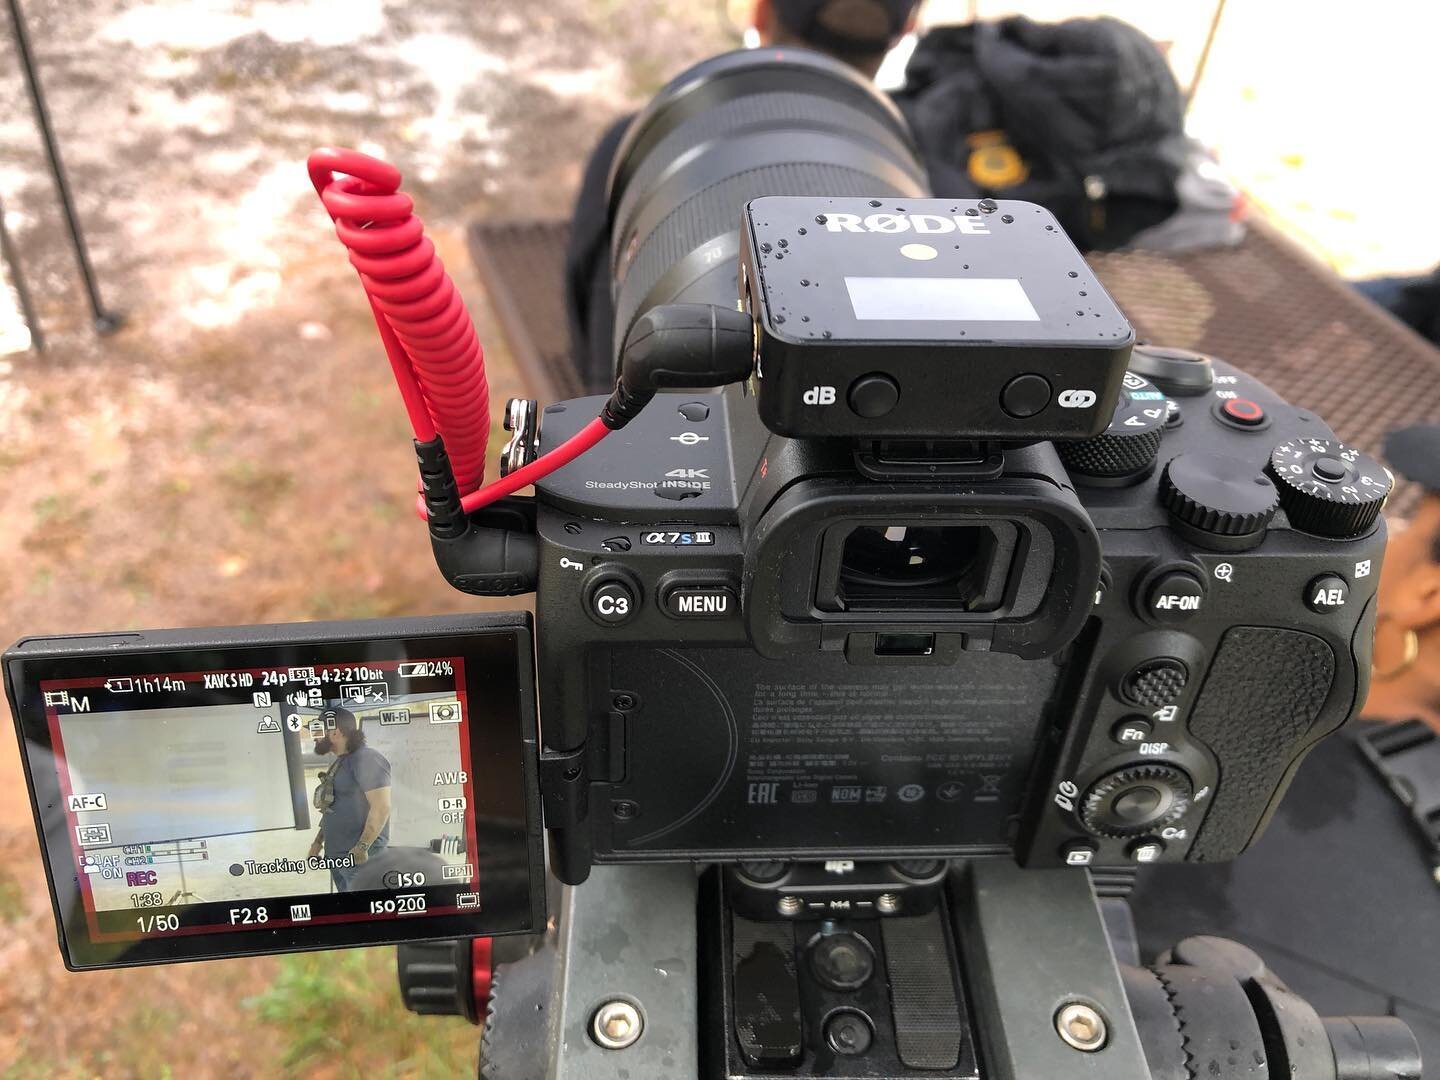 @rodemic wireless go X @sonyalpha A7S3
.
.
.
#sony #sonyalpha #rode #rodemic #rodemicrophones #sonya7siii #a7siii #a7s3 #filmmaking #filmmaker #production #productioncompany #videoproduction #videoproductions #mirrorlesscamera #videography #wireless